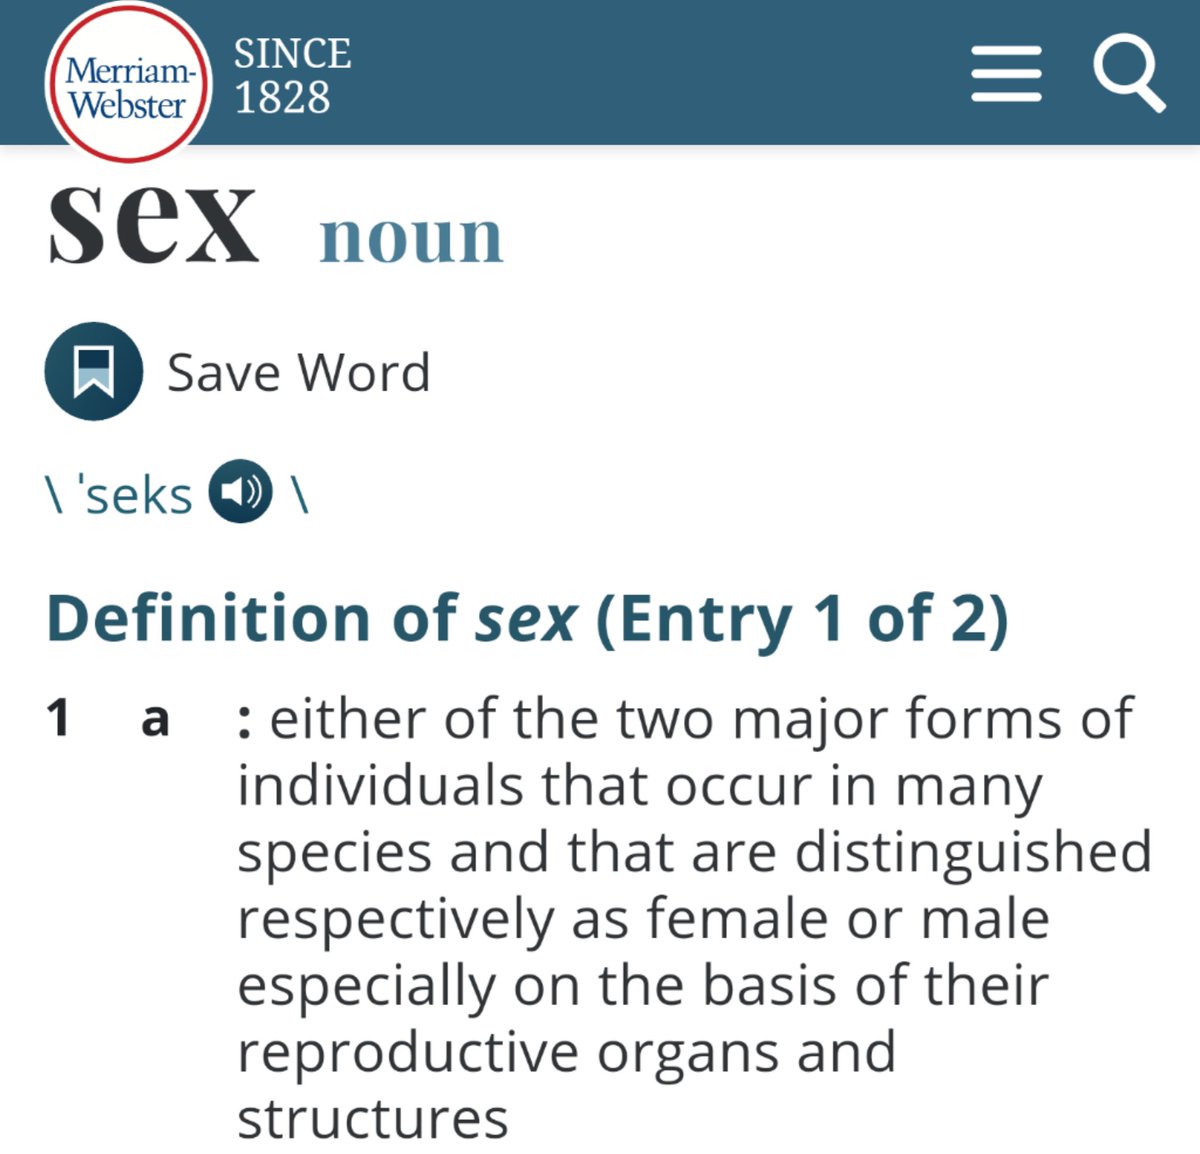 Sex : 𝘦𝘪𝘵𝘩𝘦𝘳 𝘰𝘧 𝘵𝘩𝘦 𝘵𝘸𝘰 𝘮𝘢𝘫𝘰𝘳 𝘧𝘰𝘳𝘮𝘴 𝘰𝘧 𝘪𝘯𝘥𝘪𝘷𝘪𝘥𝘶𝘢𝘭𝘴 𝘵𝘩𝘢𝘵 𝘰𝘤𝘤𝘶𝘳 𝘪𝘯 𝘮𝘢𝘯𝘺 𝘴𝘱𝘦𝘤𝘪𝘦𝘴 𝘢𝘯𝘥 𝘵𝘩𝘢𝘵 𝘢𝘳𝘦 𝘥𝘪𝘴𝘵𝘪𝘯𝘨𝘶𝘪𝘴𝘩𝘦𝘥 𝘳𝘦𝘴𝘱𝘦𝘤𝘵𝘪𝘷𝘦𝘭𝘺 𝘢𝘴 𝙛𝙚𝙢𝙖𝙡𝙚 𝘰𝘳 𝙢𝙖𝙡𝙚...